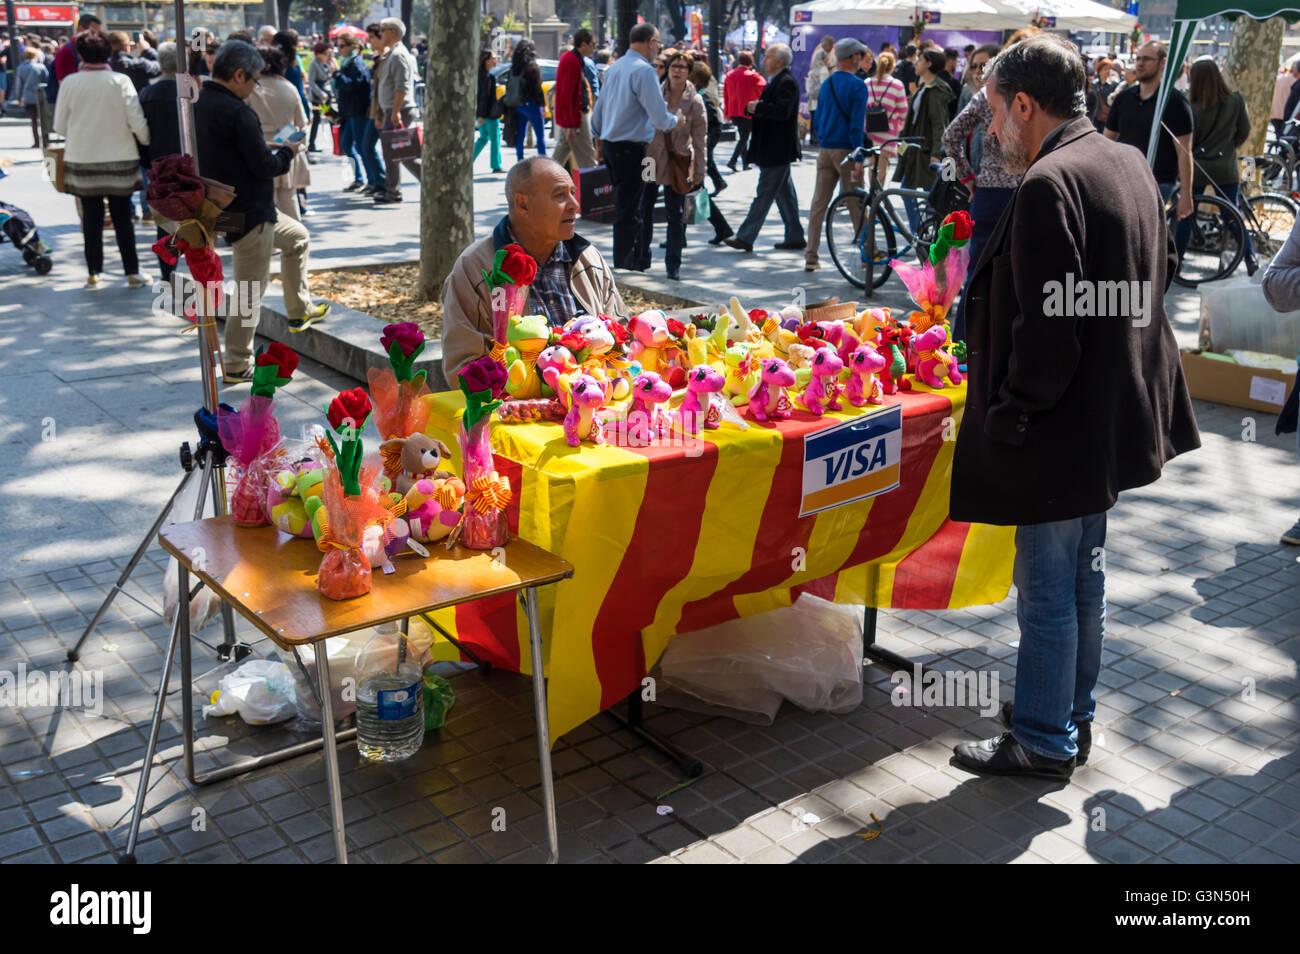 Stand du marché avec la vente de drapeaux catalans dragons en peluche sur Diada de Sant Jordi (Saint George's Day), le 23 avril, Barcelone. Banque D'Images